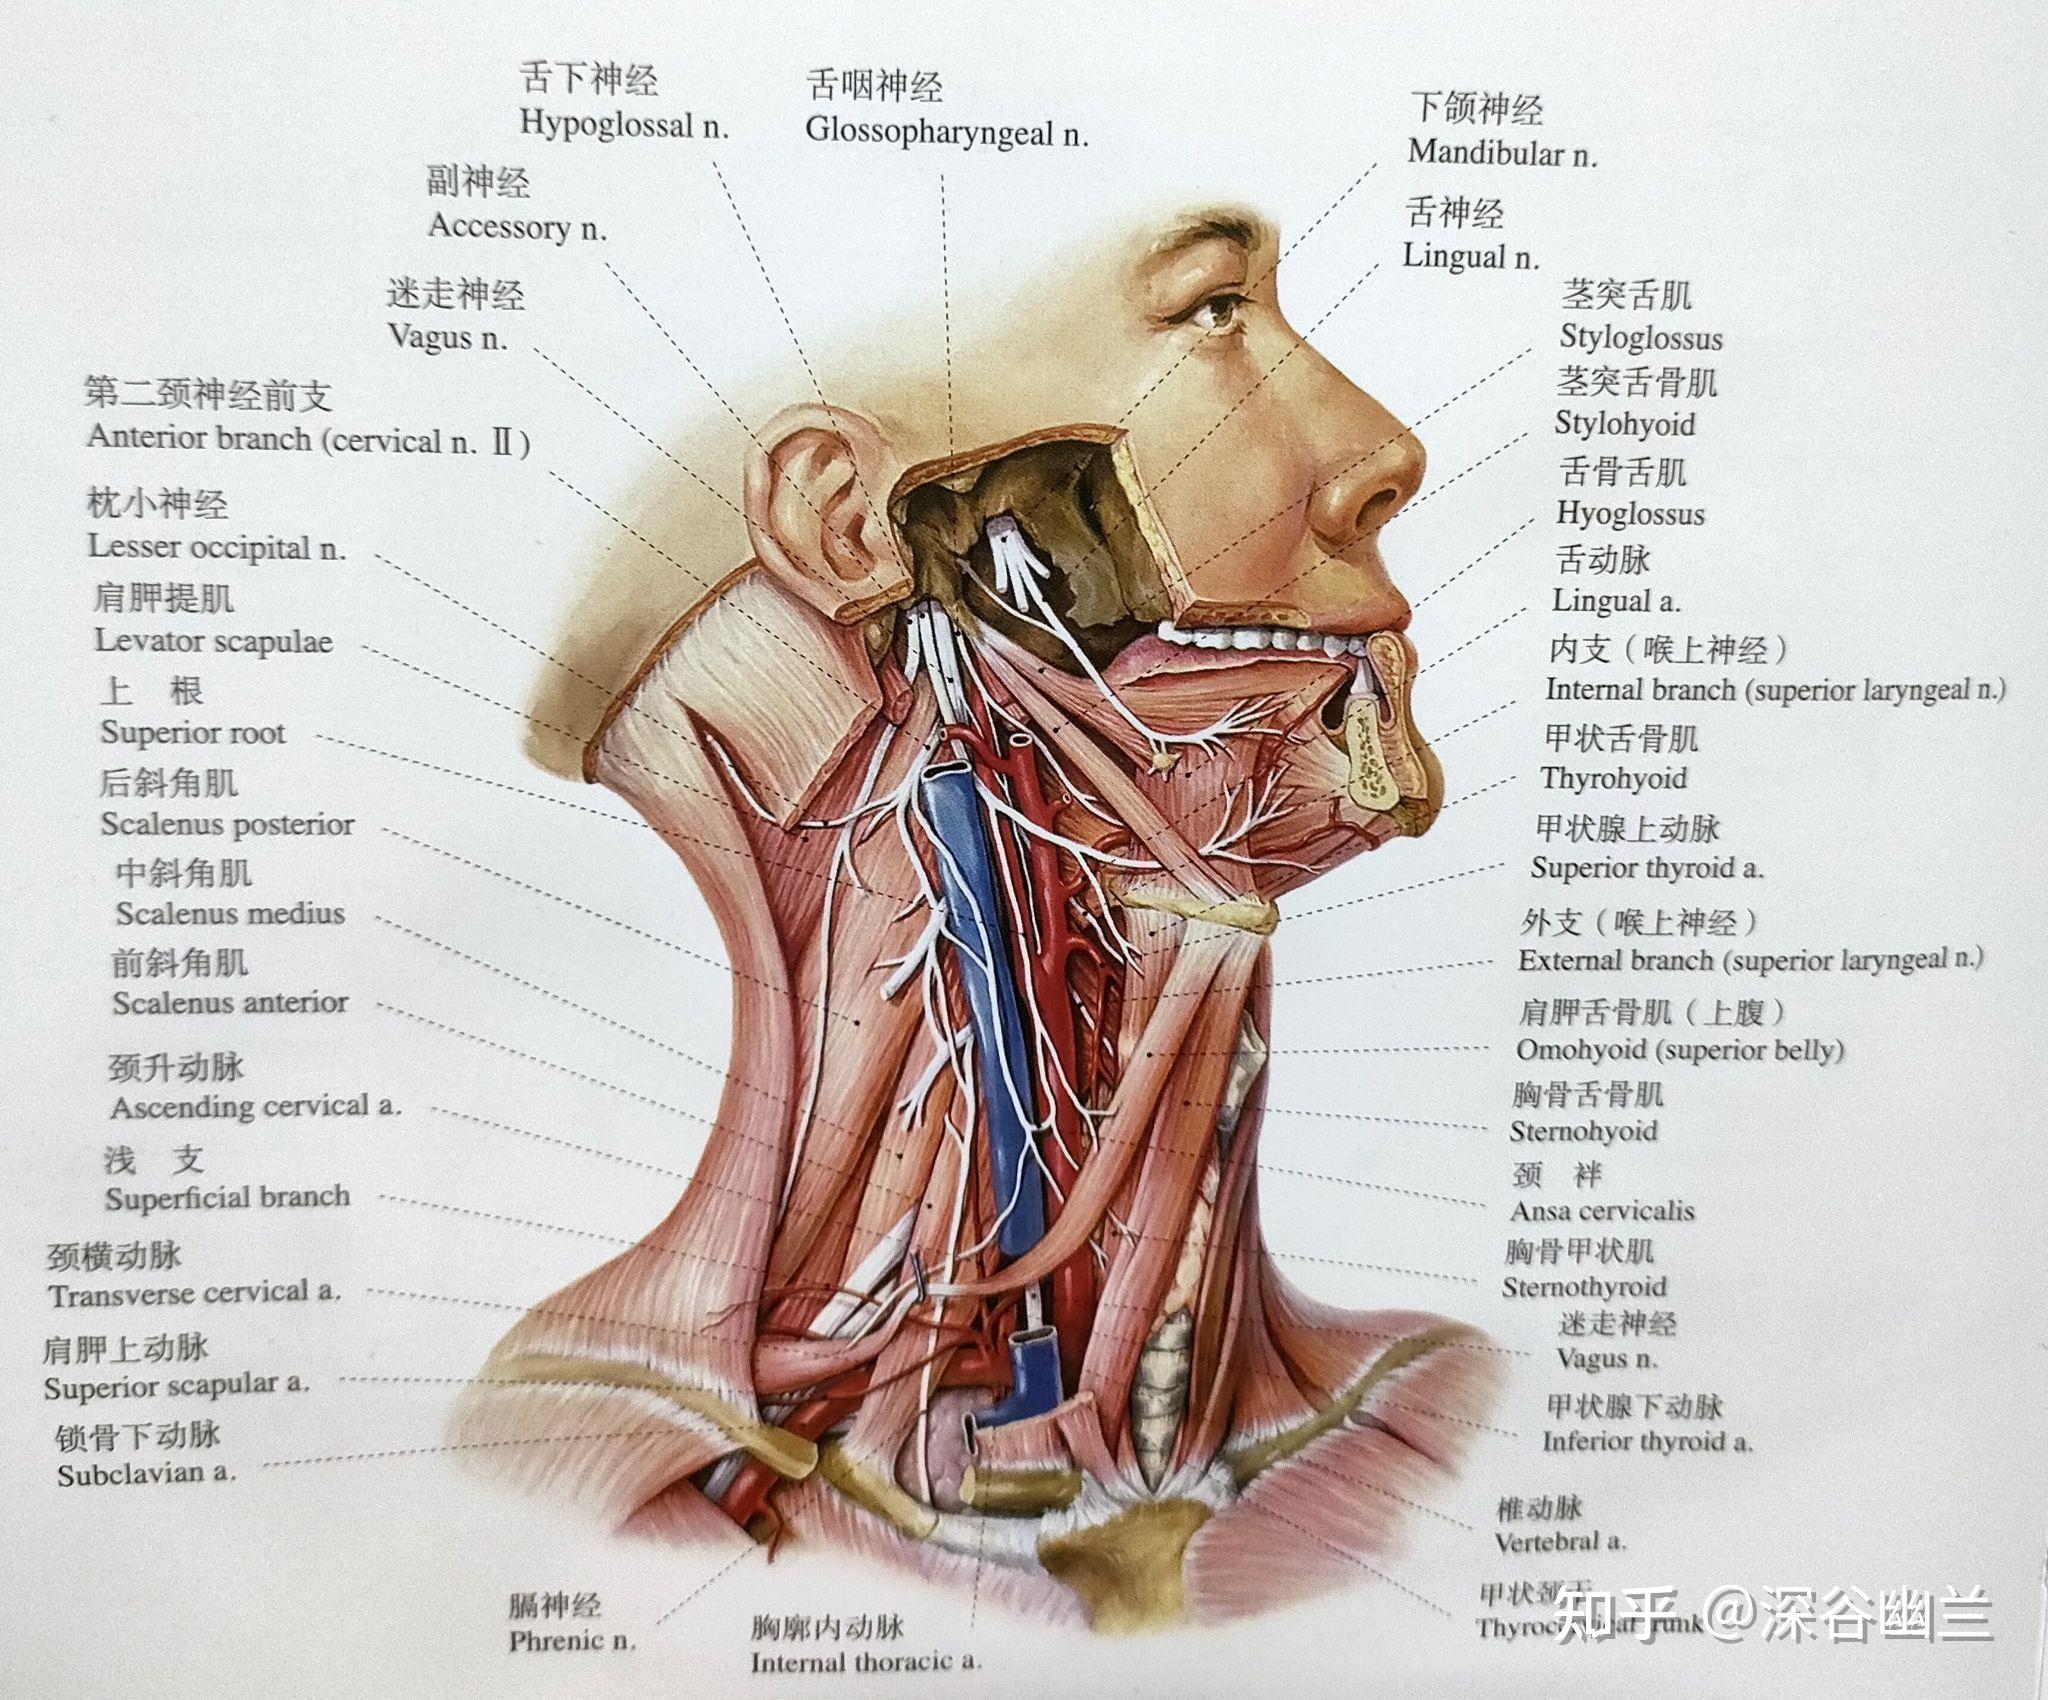 肩胛舌骨肌,胸骨甲状肌,甲状舌骨肌,二腹肌,茎突舌骨肌,下颌舌骨肌,颏